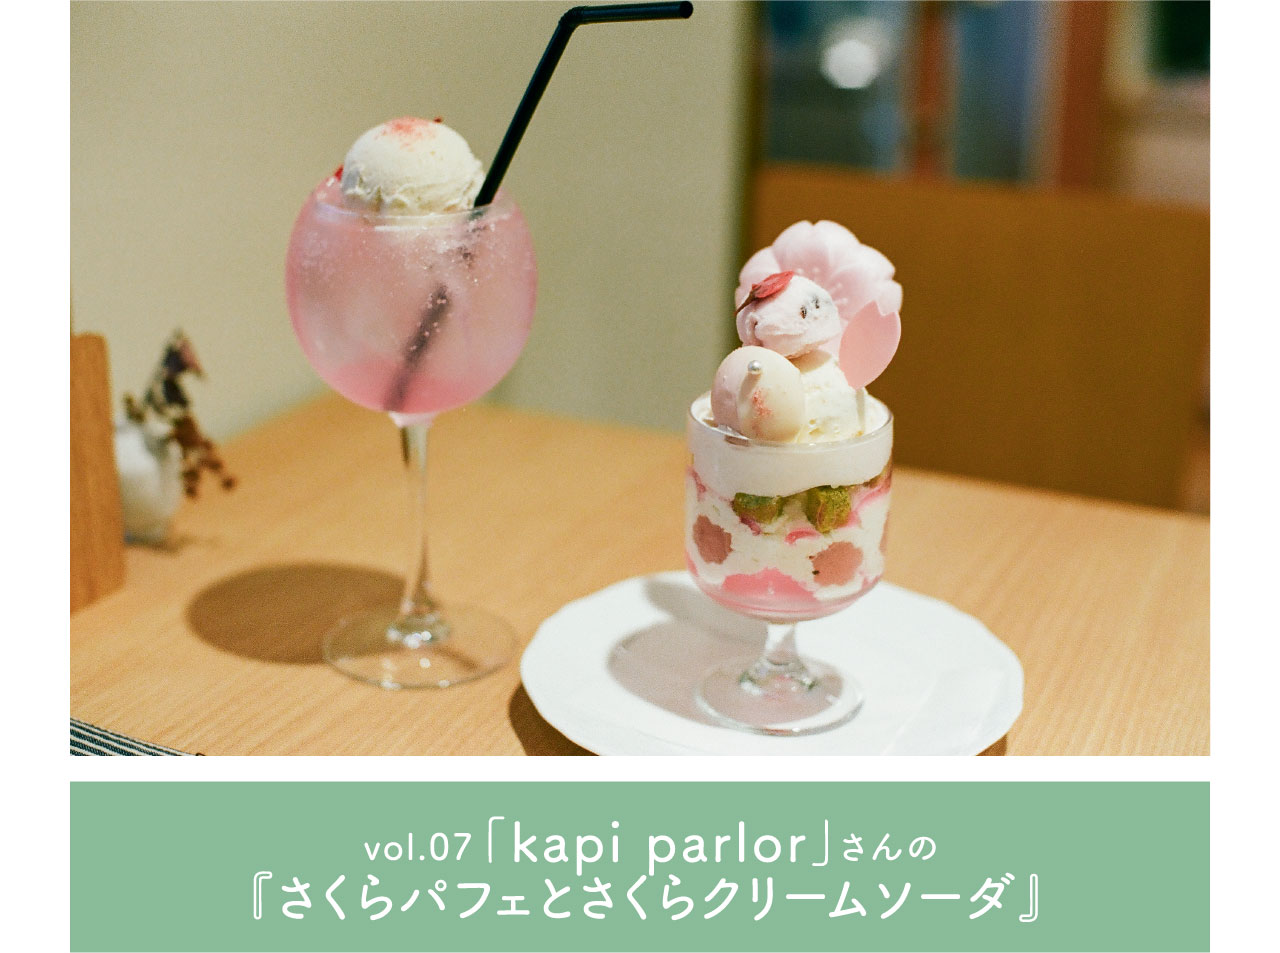 vol.07 「kapi parlor」さんの『さくらパフェとさくらクリームソーダ』